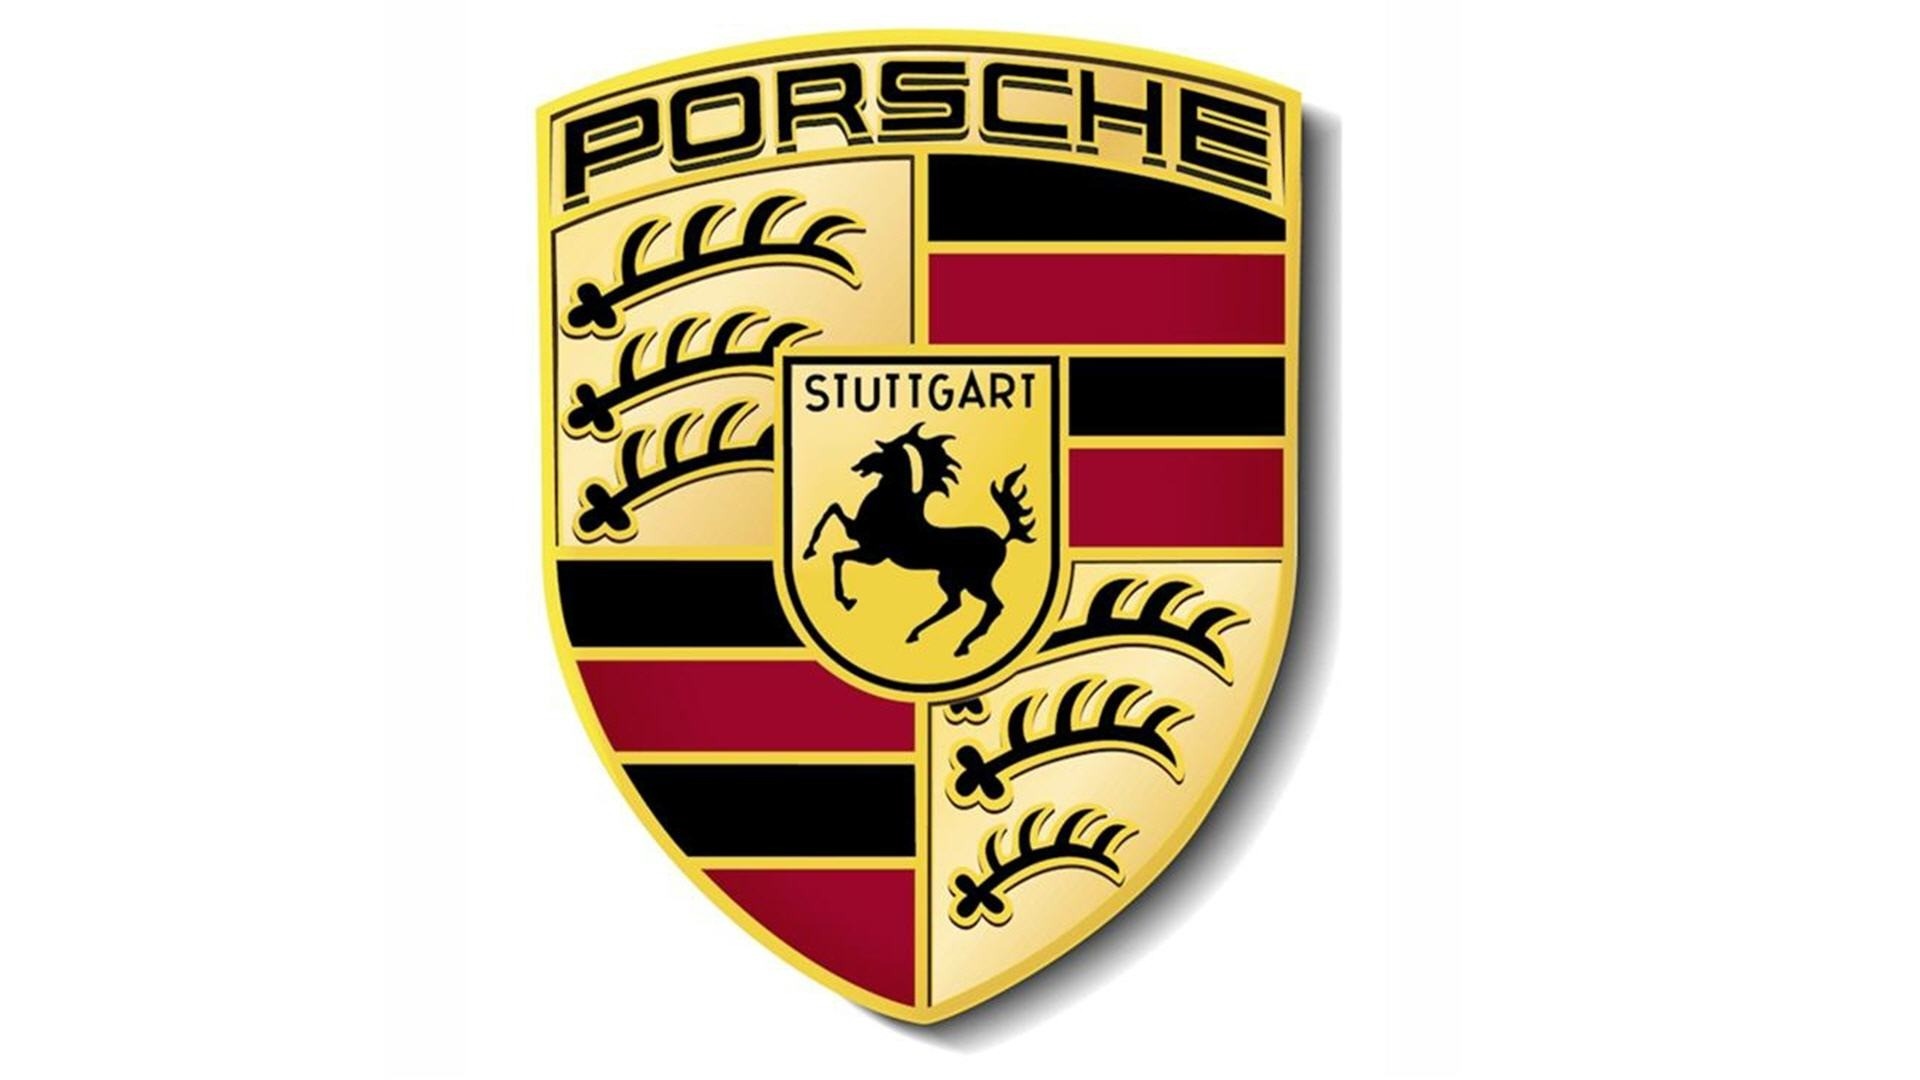 Porsche Logo Wallpaper Widescreen - image